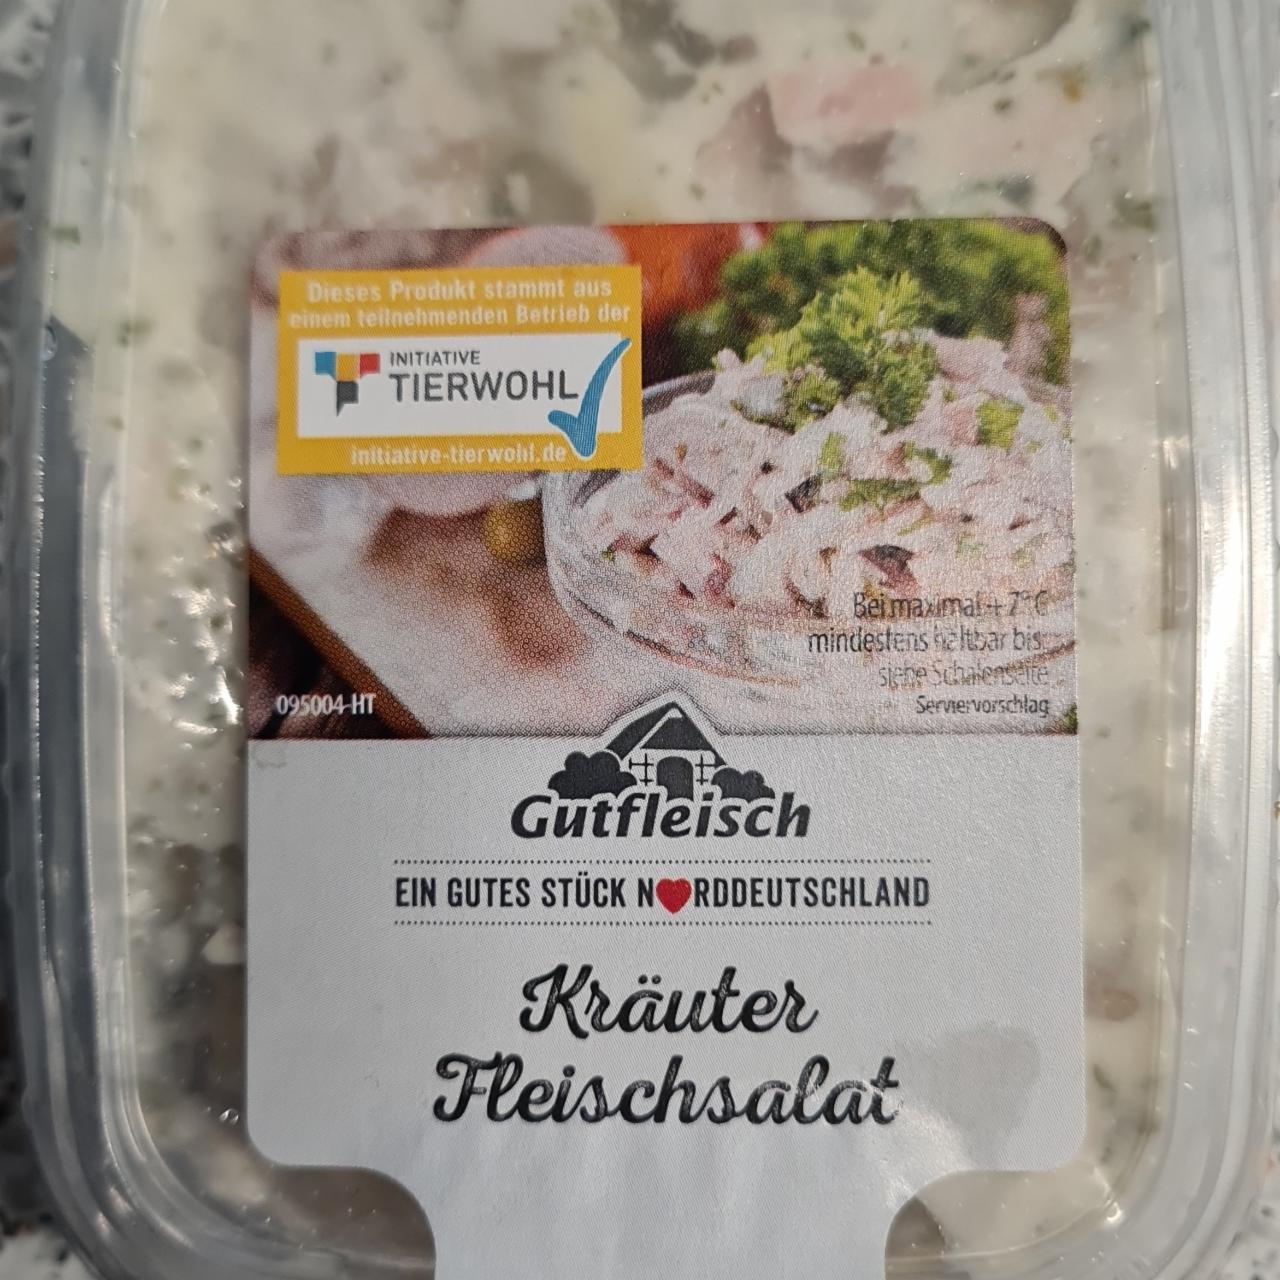 Fotografie - Kräuter Fleischsalat Gutfleisch